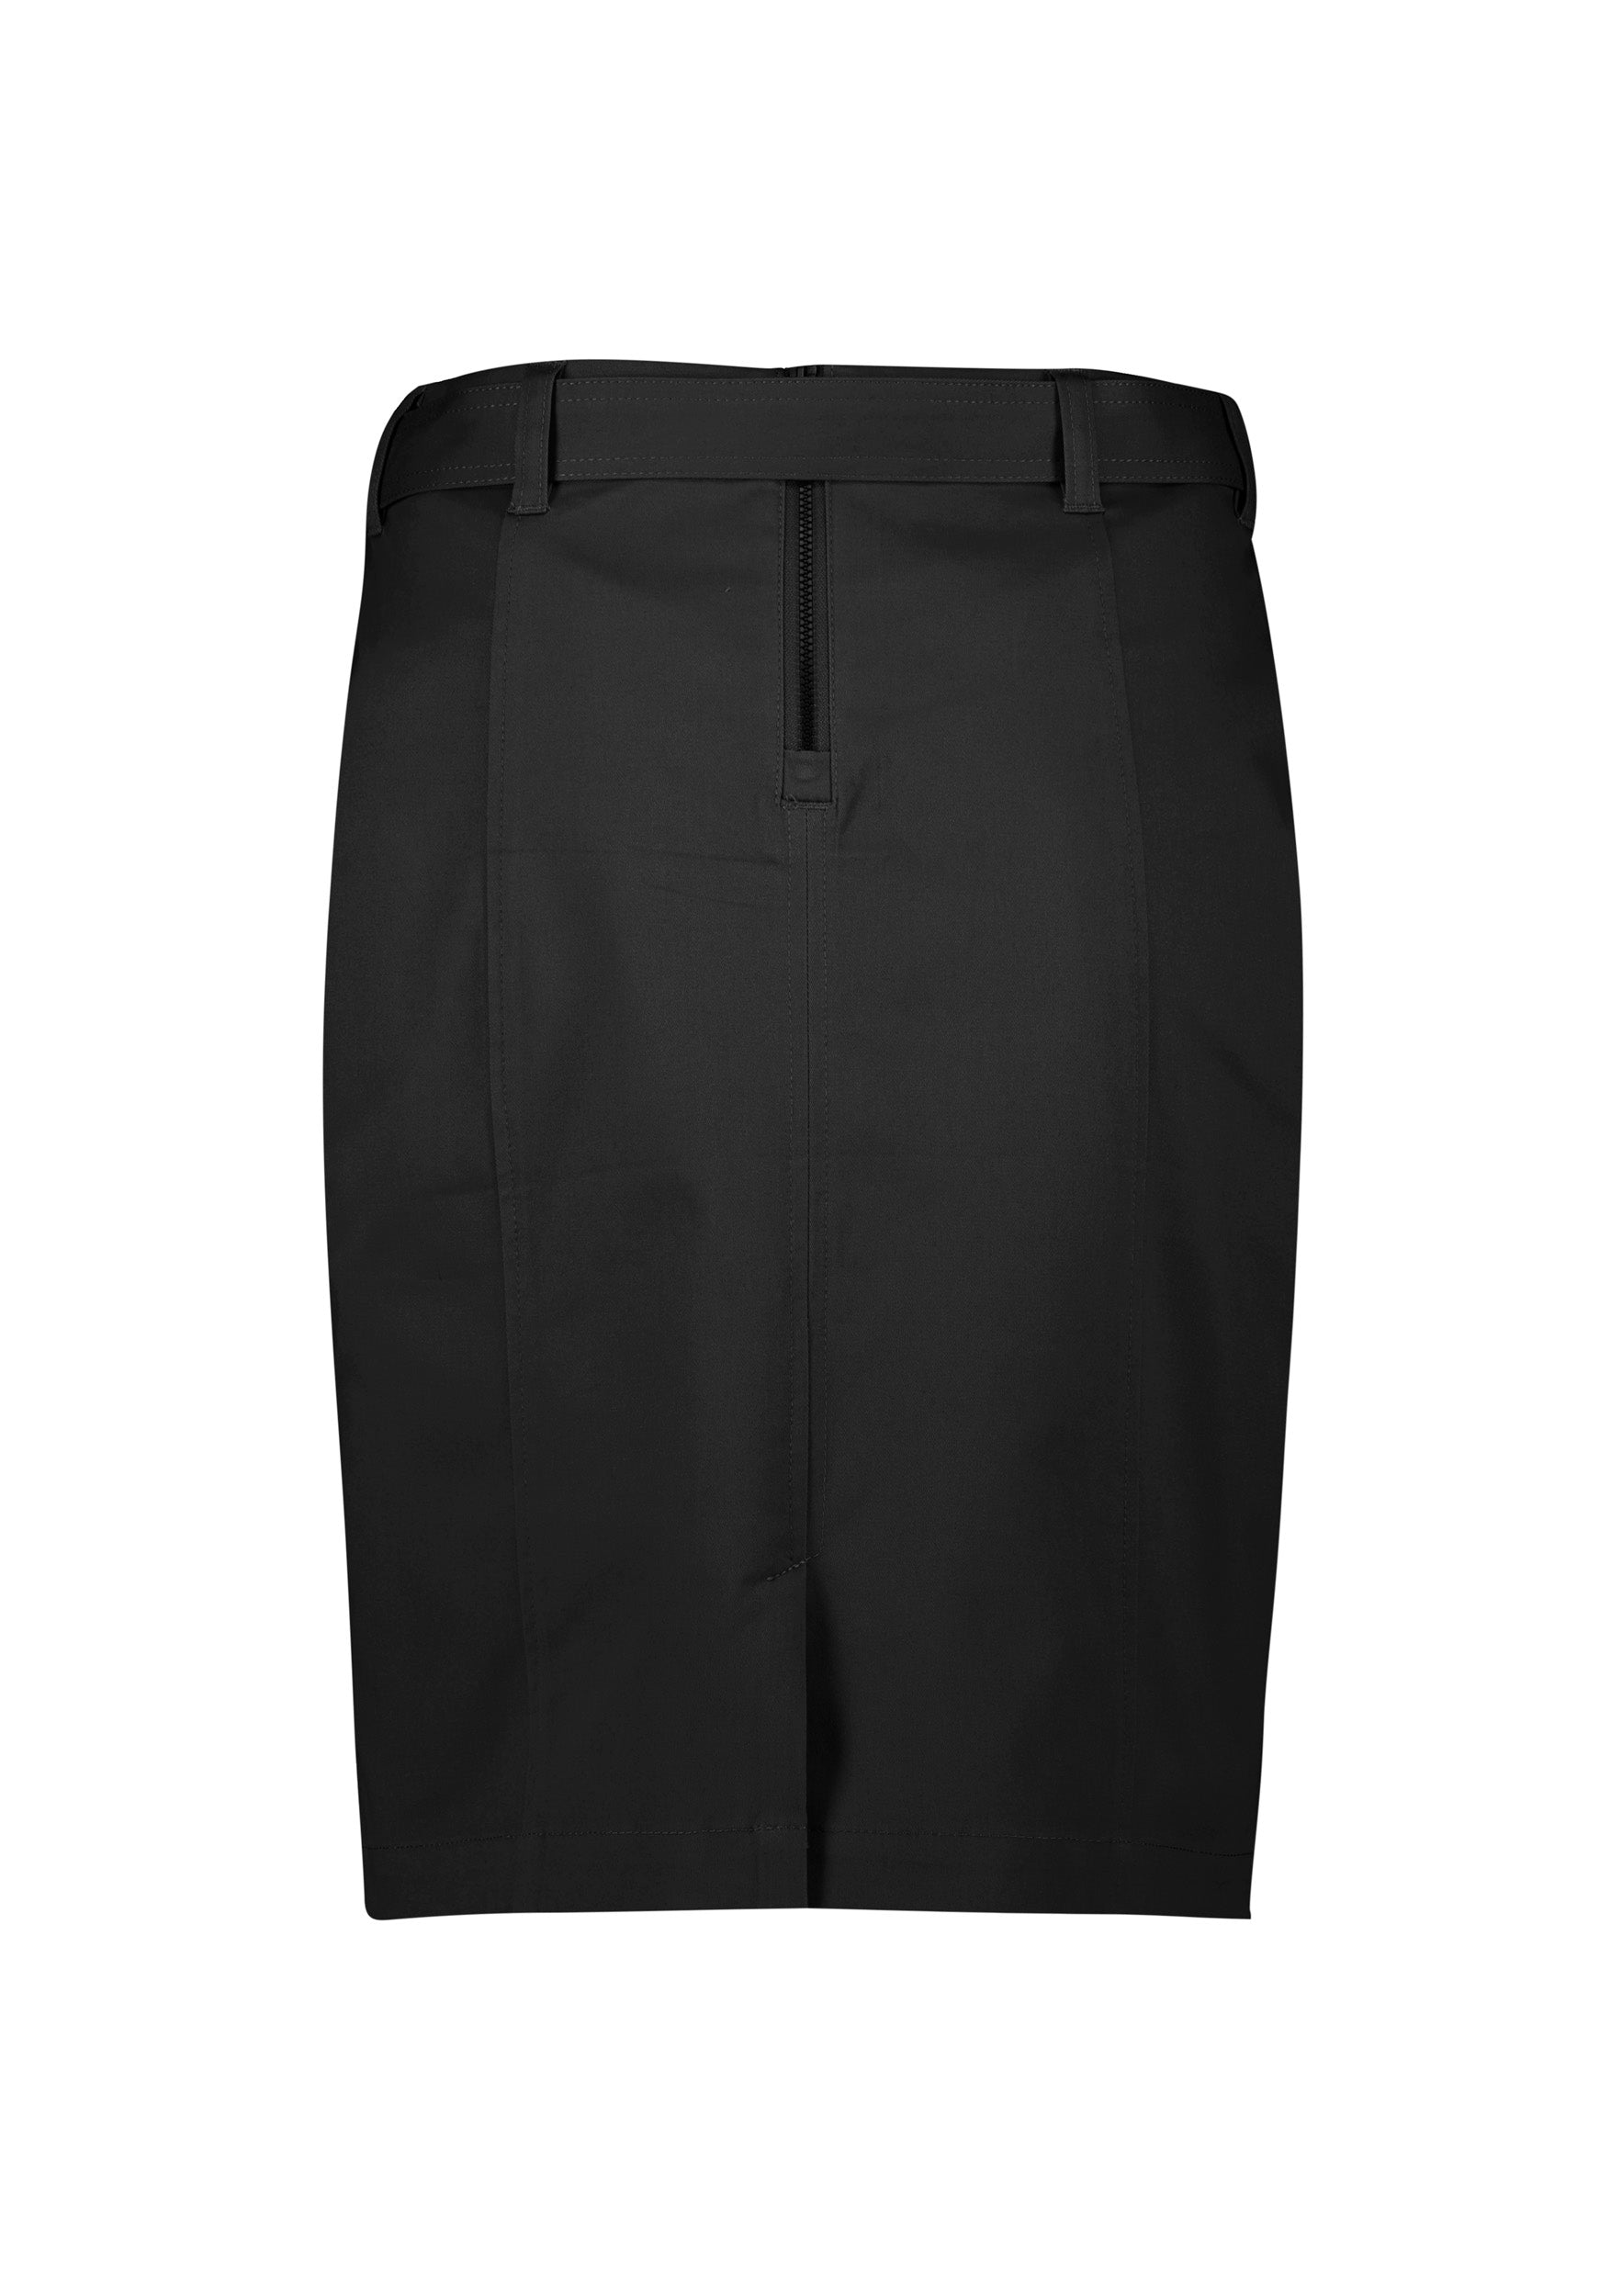 Womens Mid Waist Stretch Chino Skirt